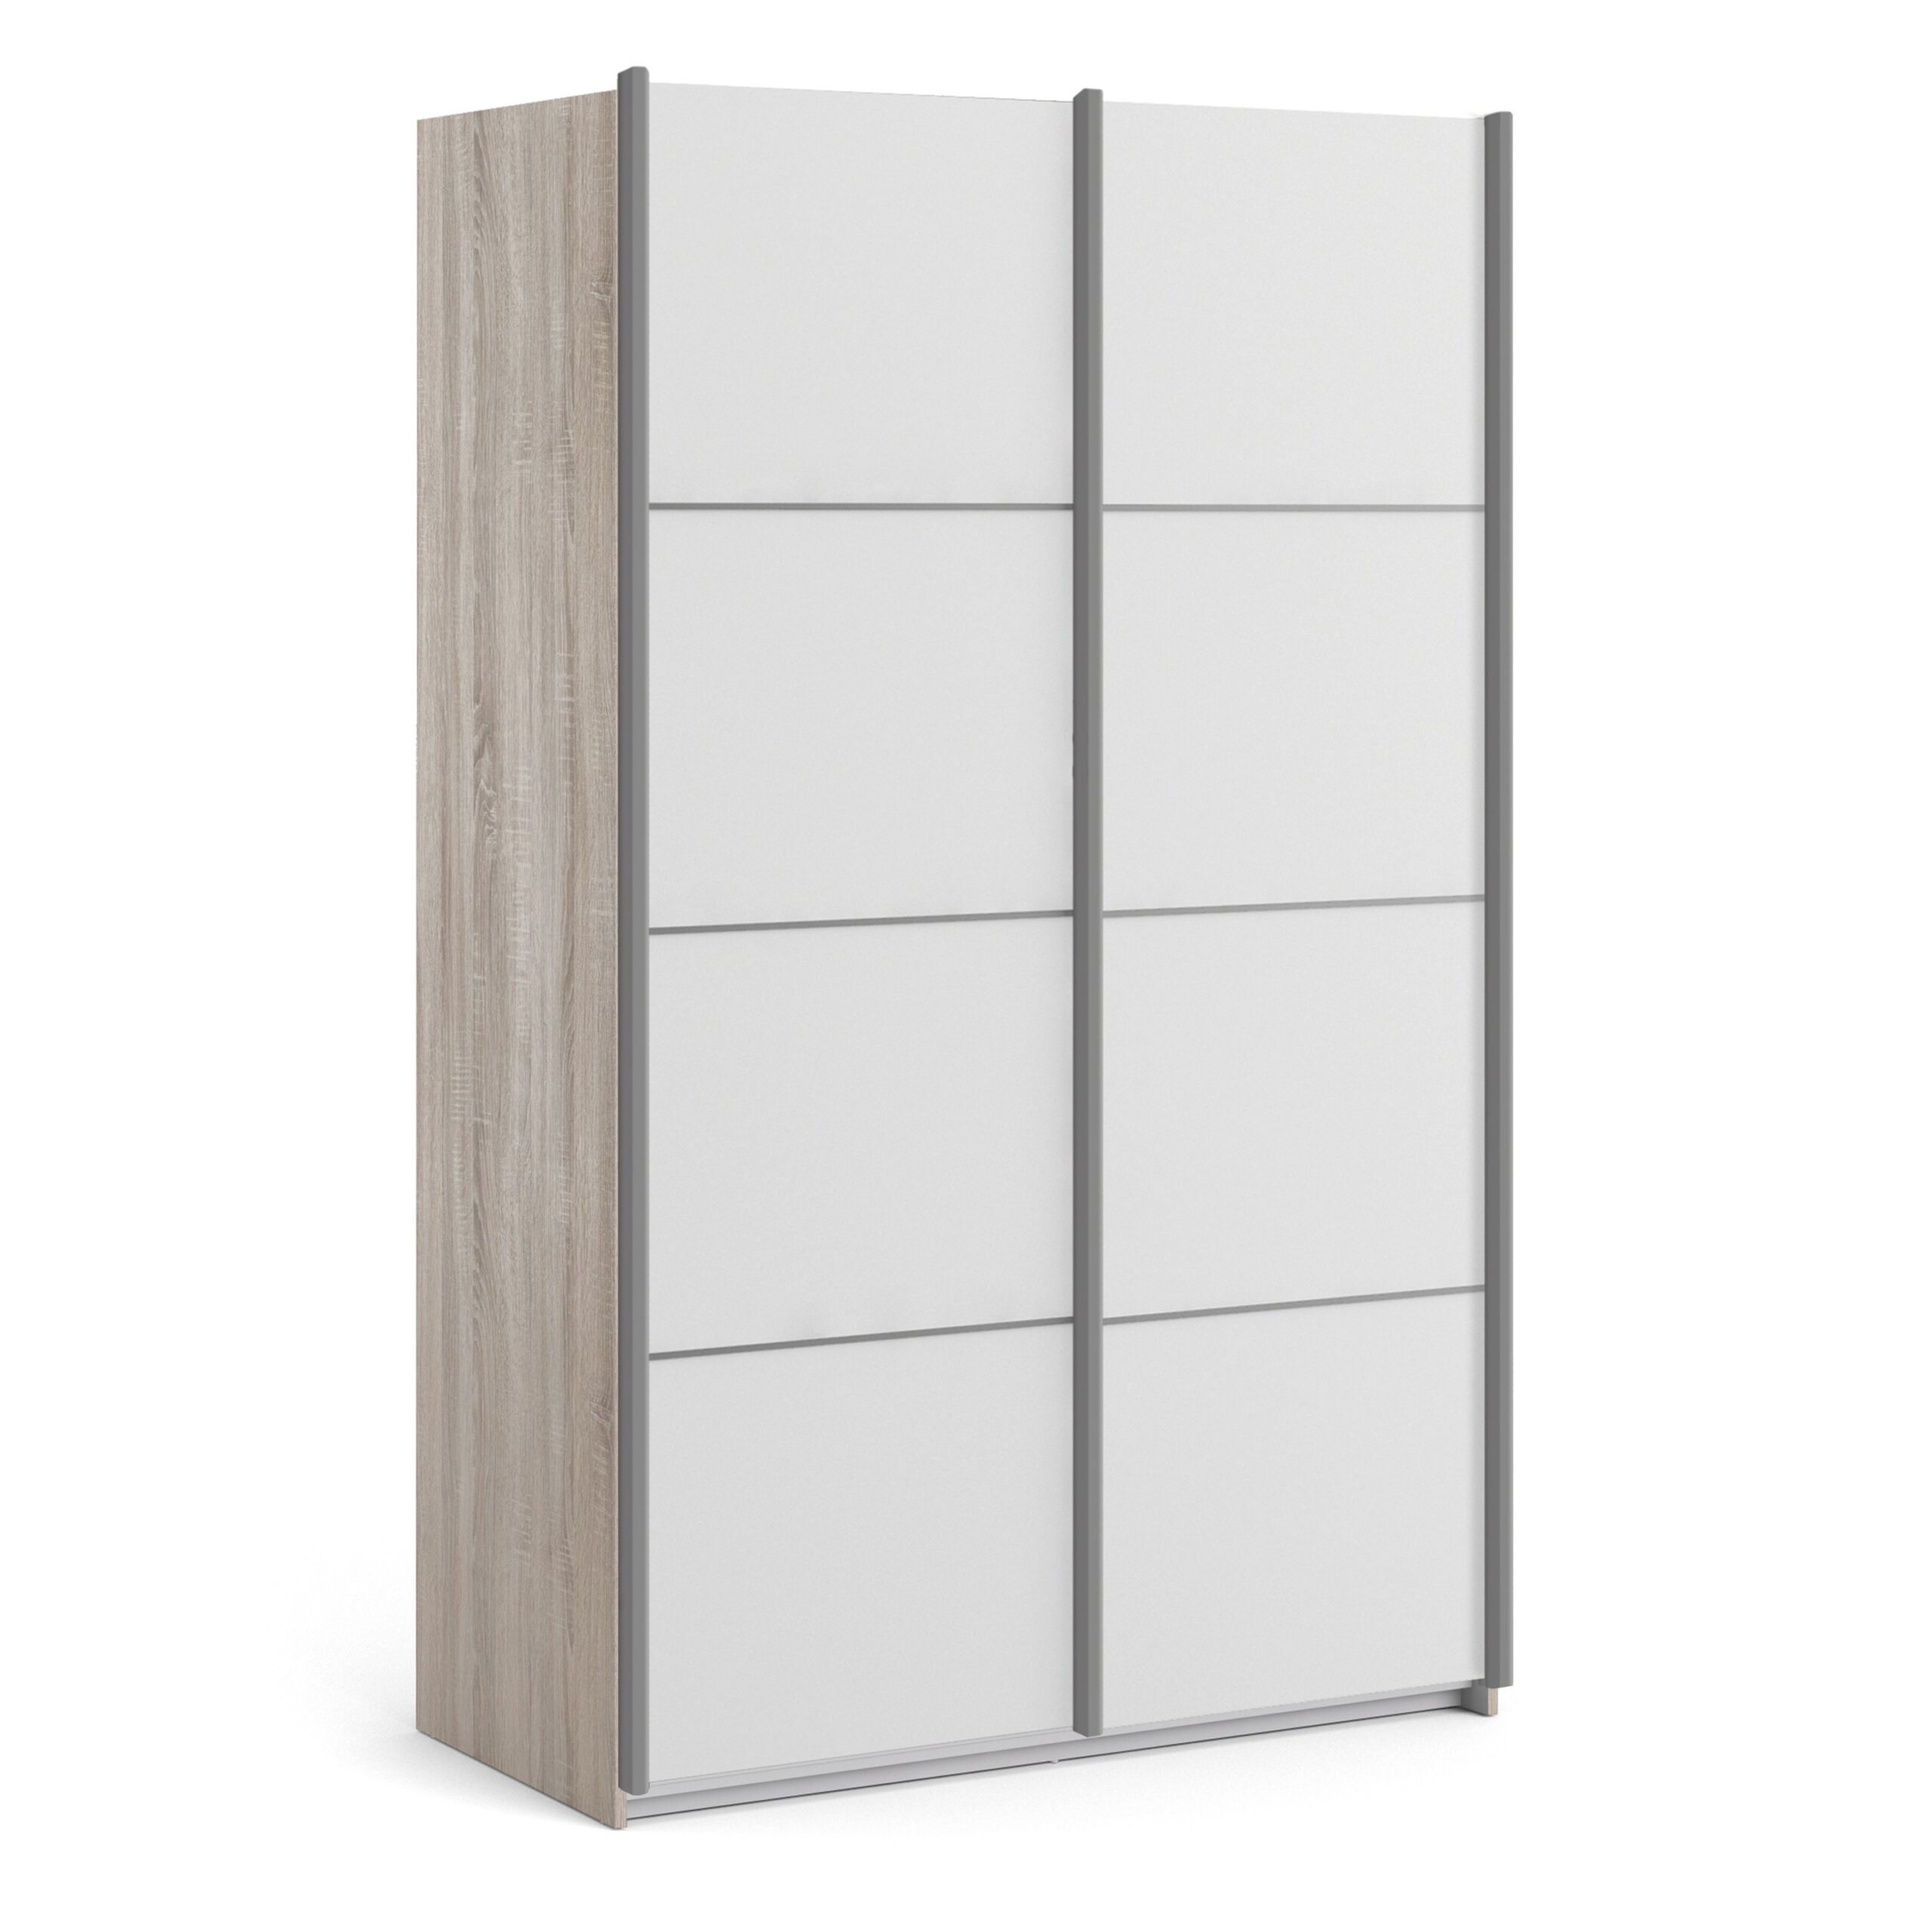 Phillipe Sliding Wardrobe 120cm in Truffle Oak with White Doors with 5 Shelves